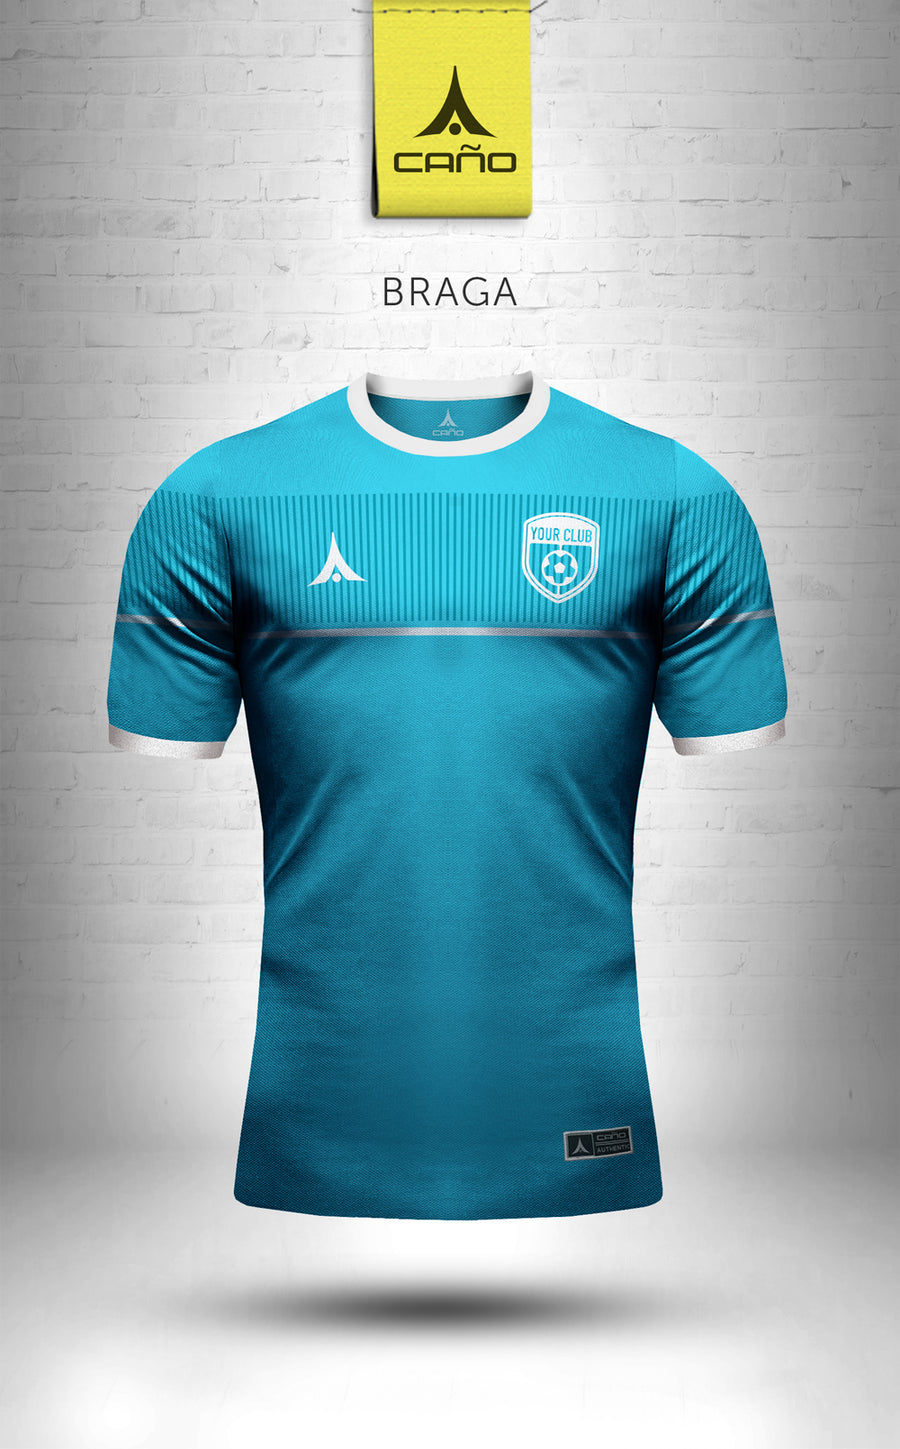 Braga in light blue/white